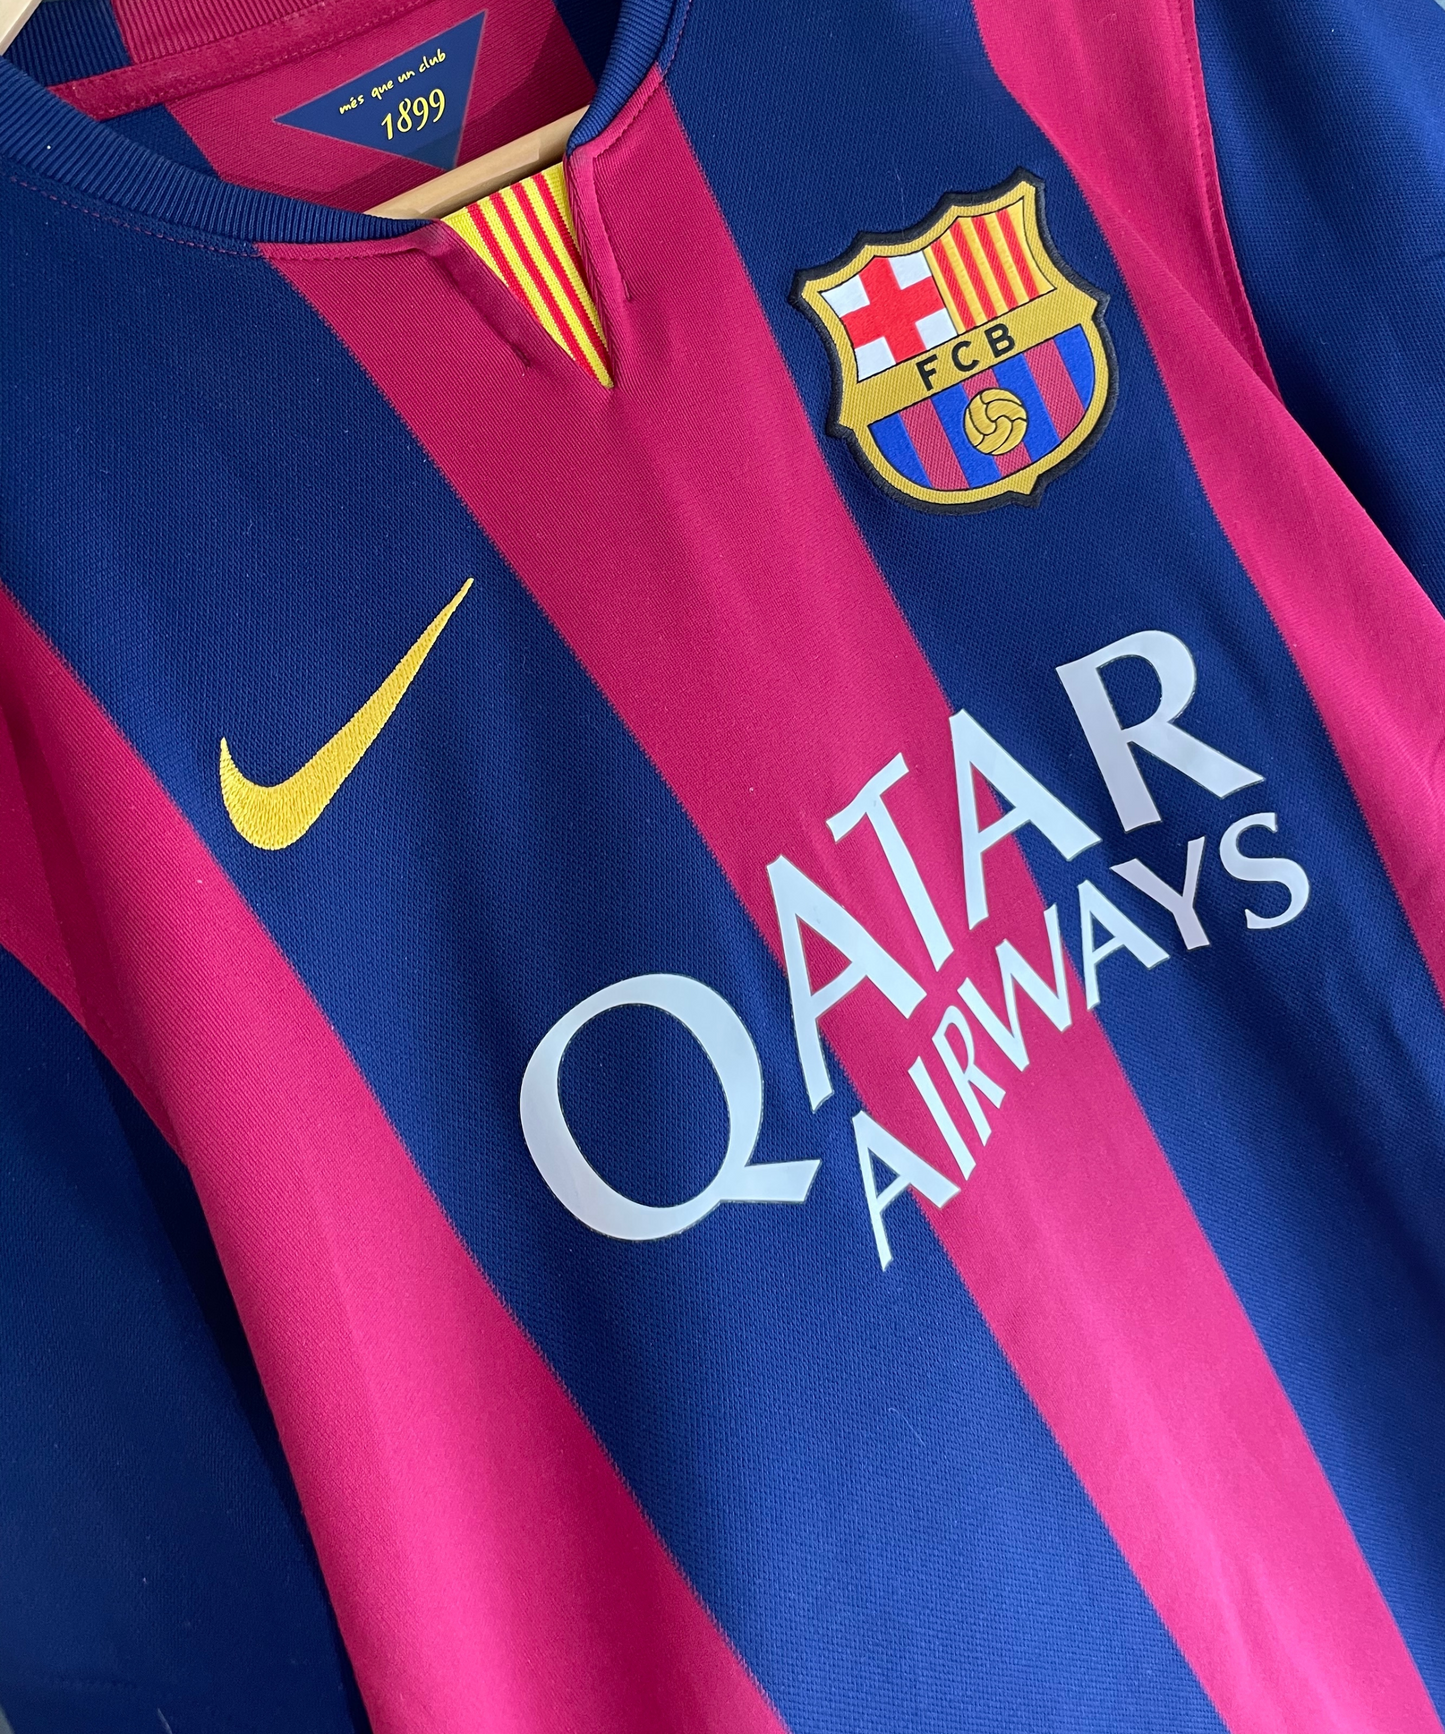 FC Barcelona 2014/15 Neymar JR Home Kit (M)